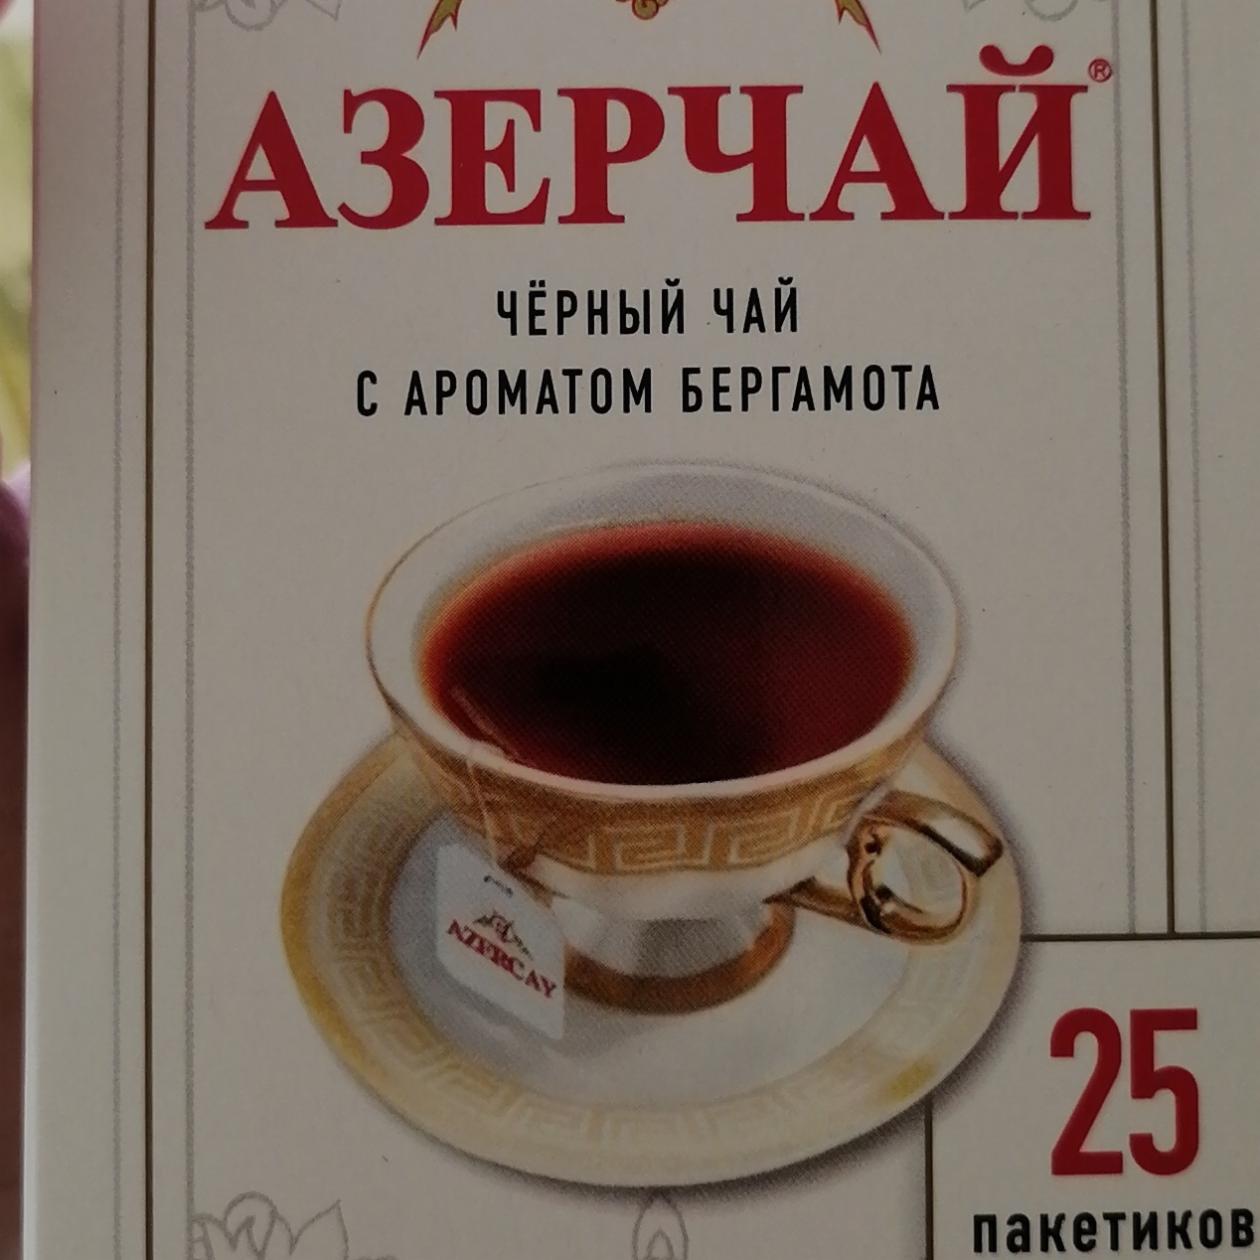 Фото - Чёрный чай с ароматом бергамота Азерчай